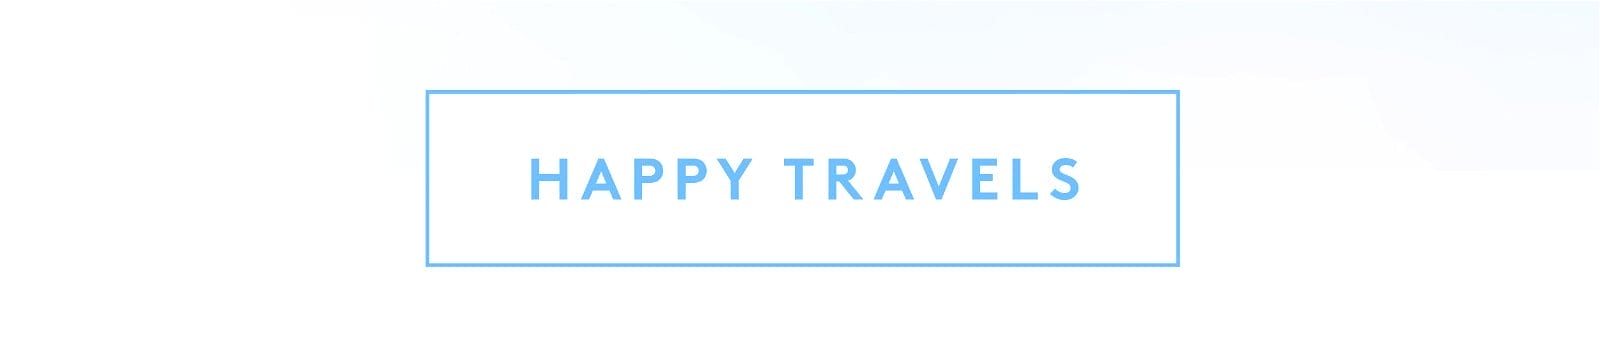 Happy Travels CTA